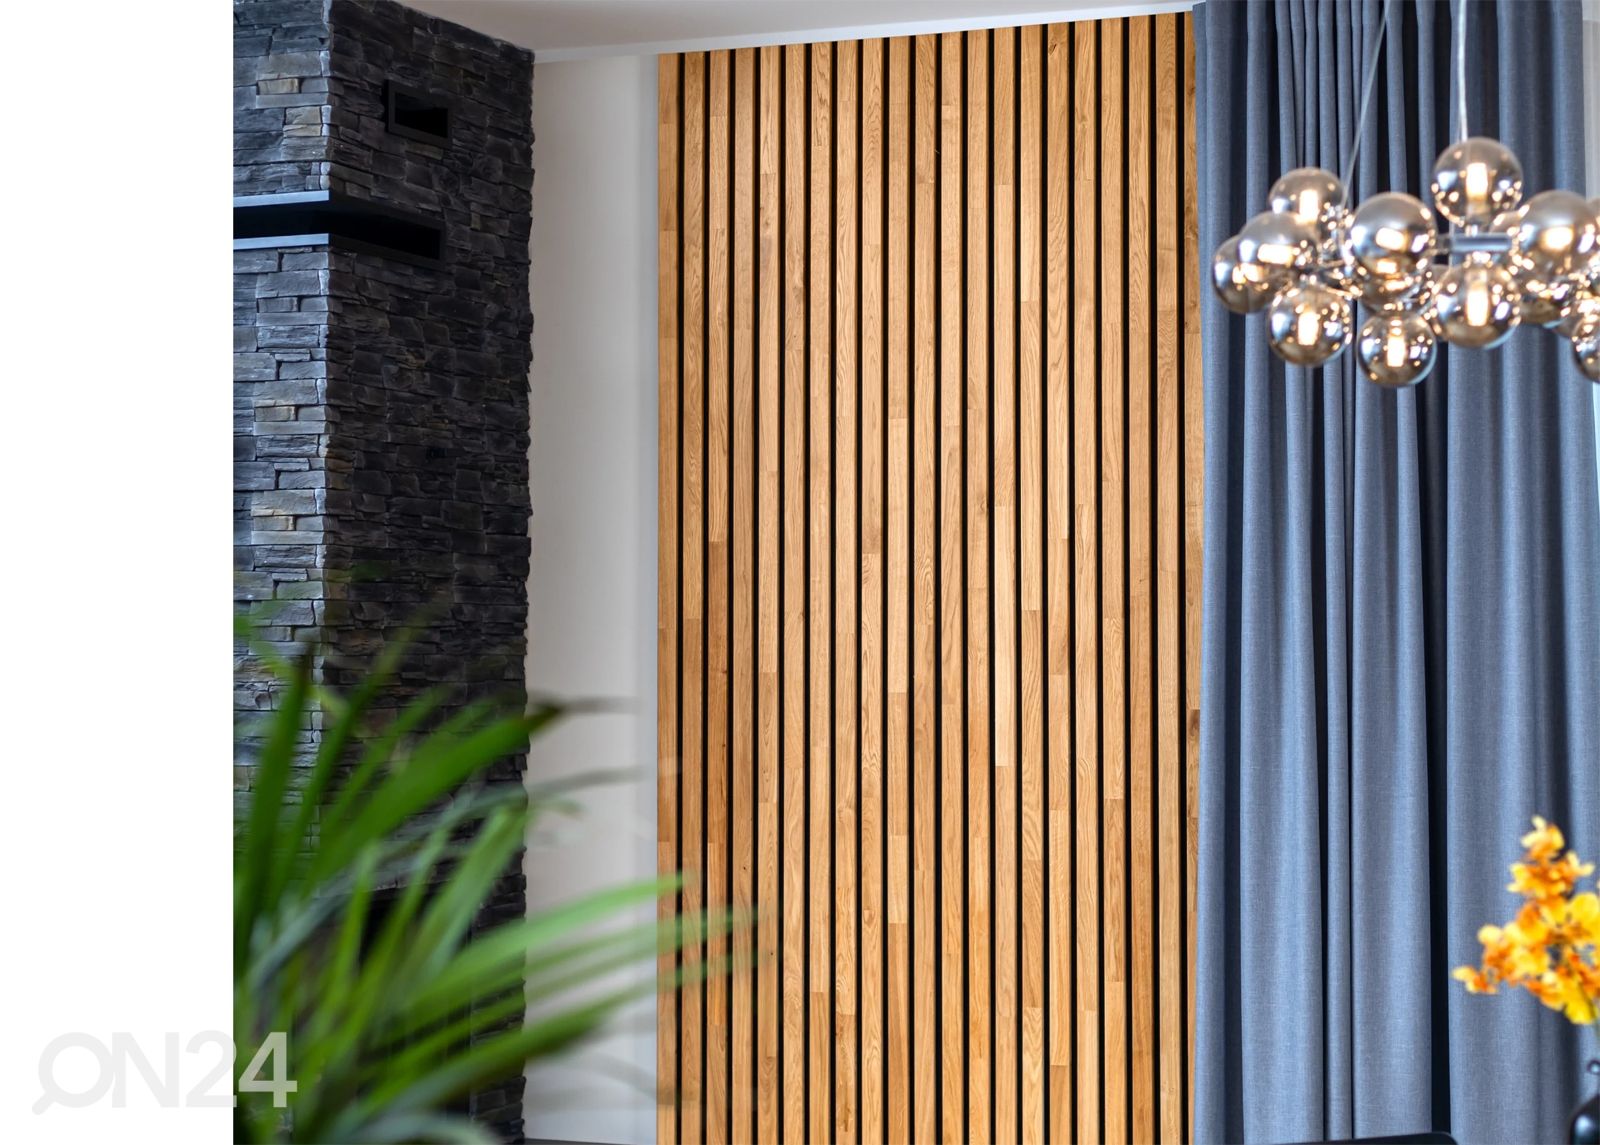 Massiivipuusta valmistettu akustinen seinäpaneeli 240x60 cm kuvasuurennos